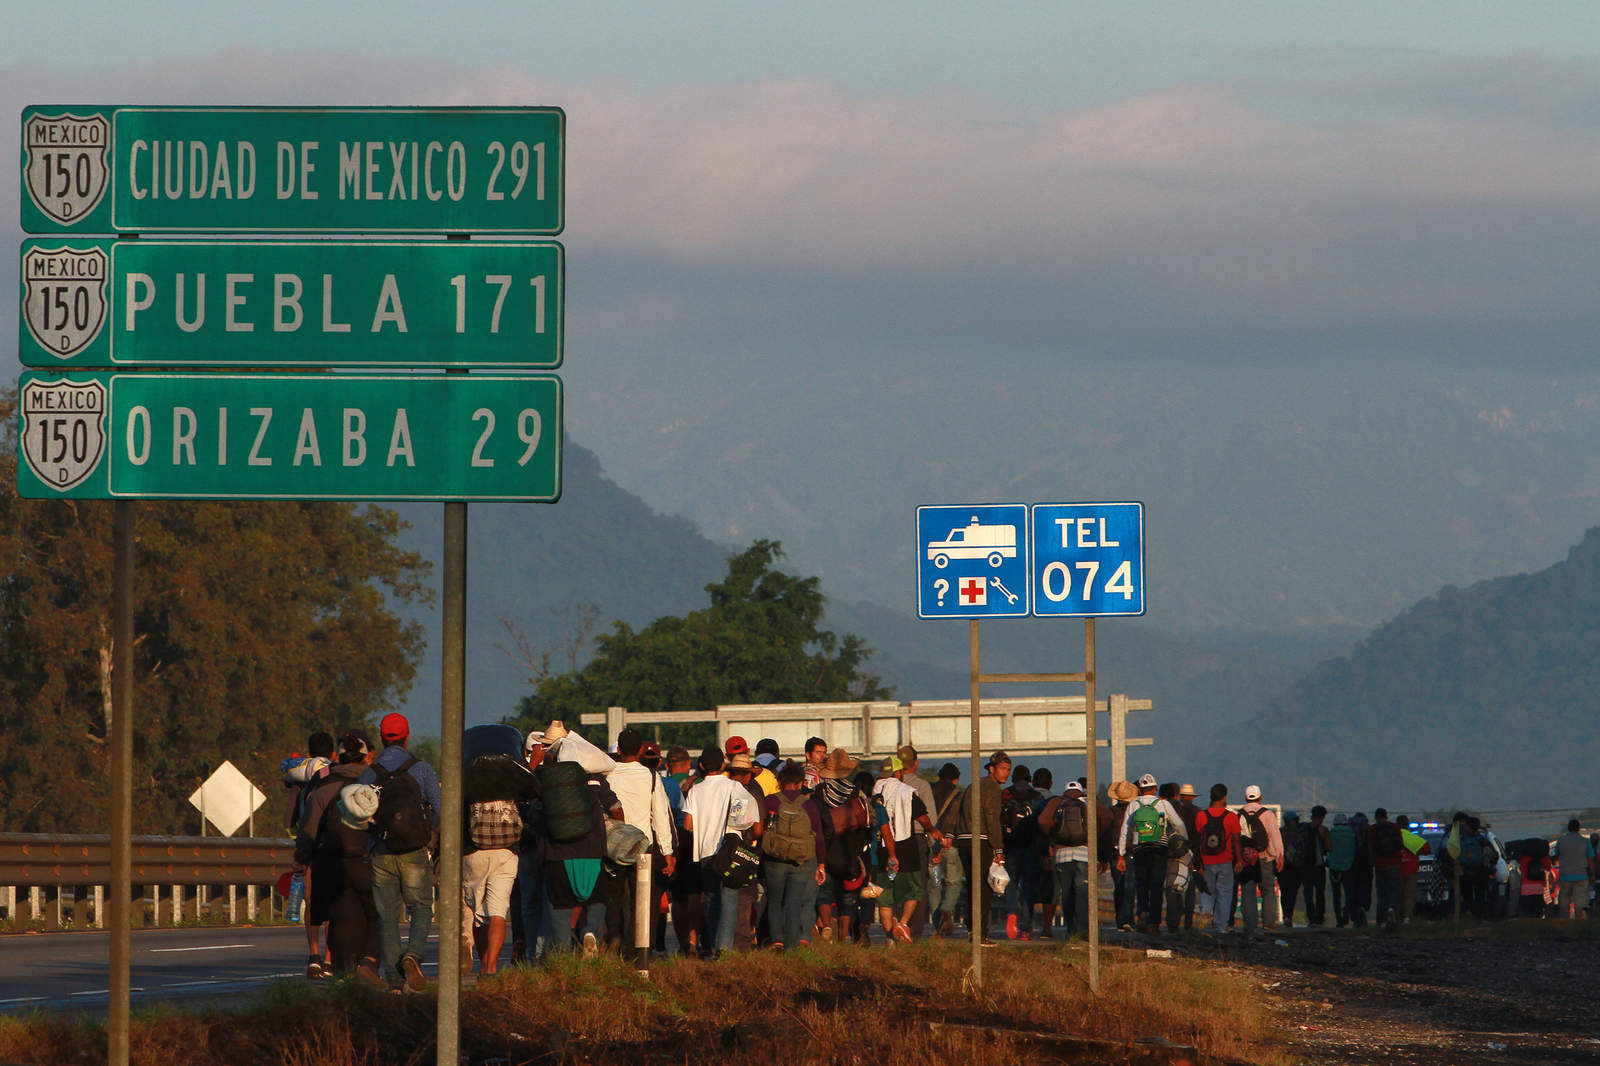  Sobre la presunta desaparición de miembros de la caravana migrantes en dos camiones que salieron de Veracruz ha habido diversos desmentidos, pero la Comisión Nacional de los Derechos Humanos (CNDH) continúa realizando una investigación, explicó Édgar Corzo Sosa, quinto visitador general de ese organismo. (NOTIMEX)